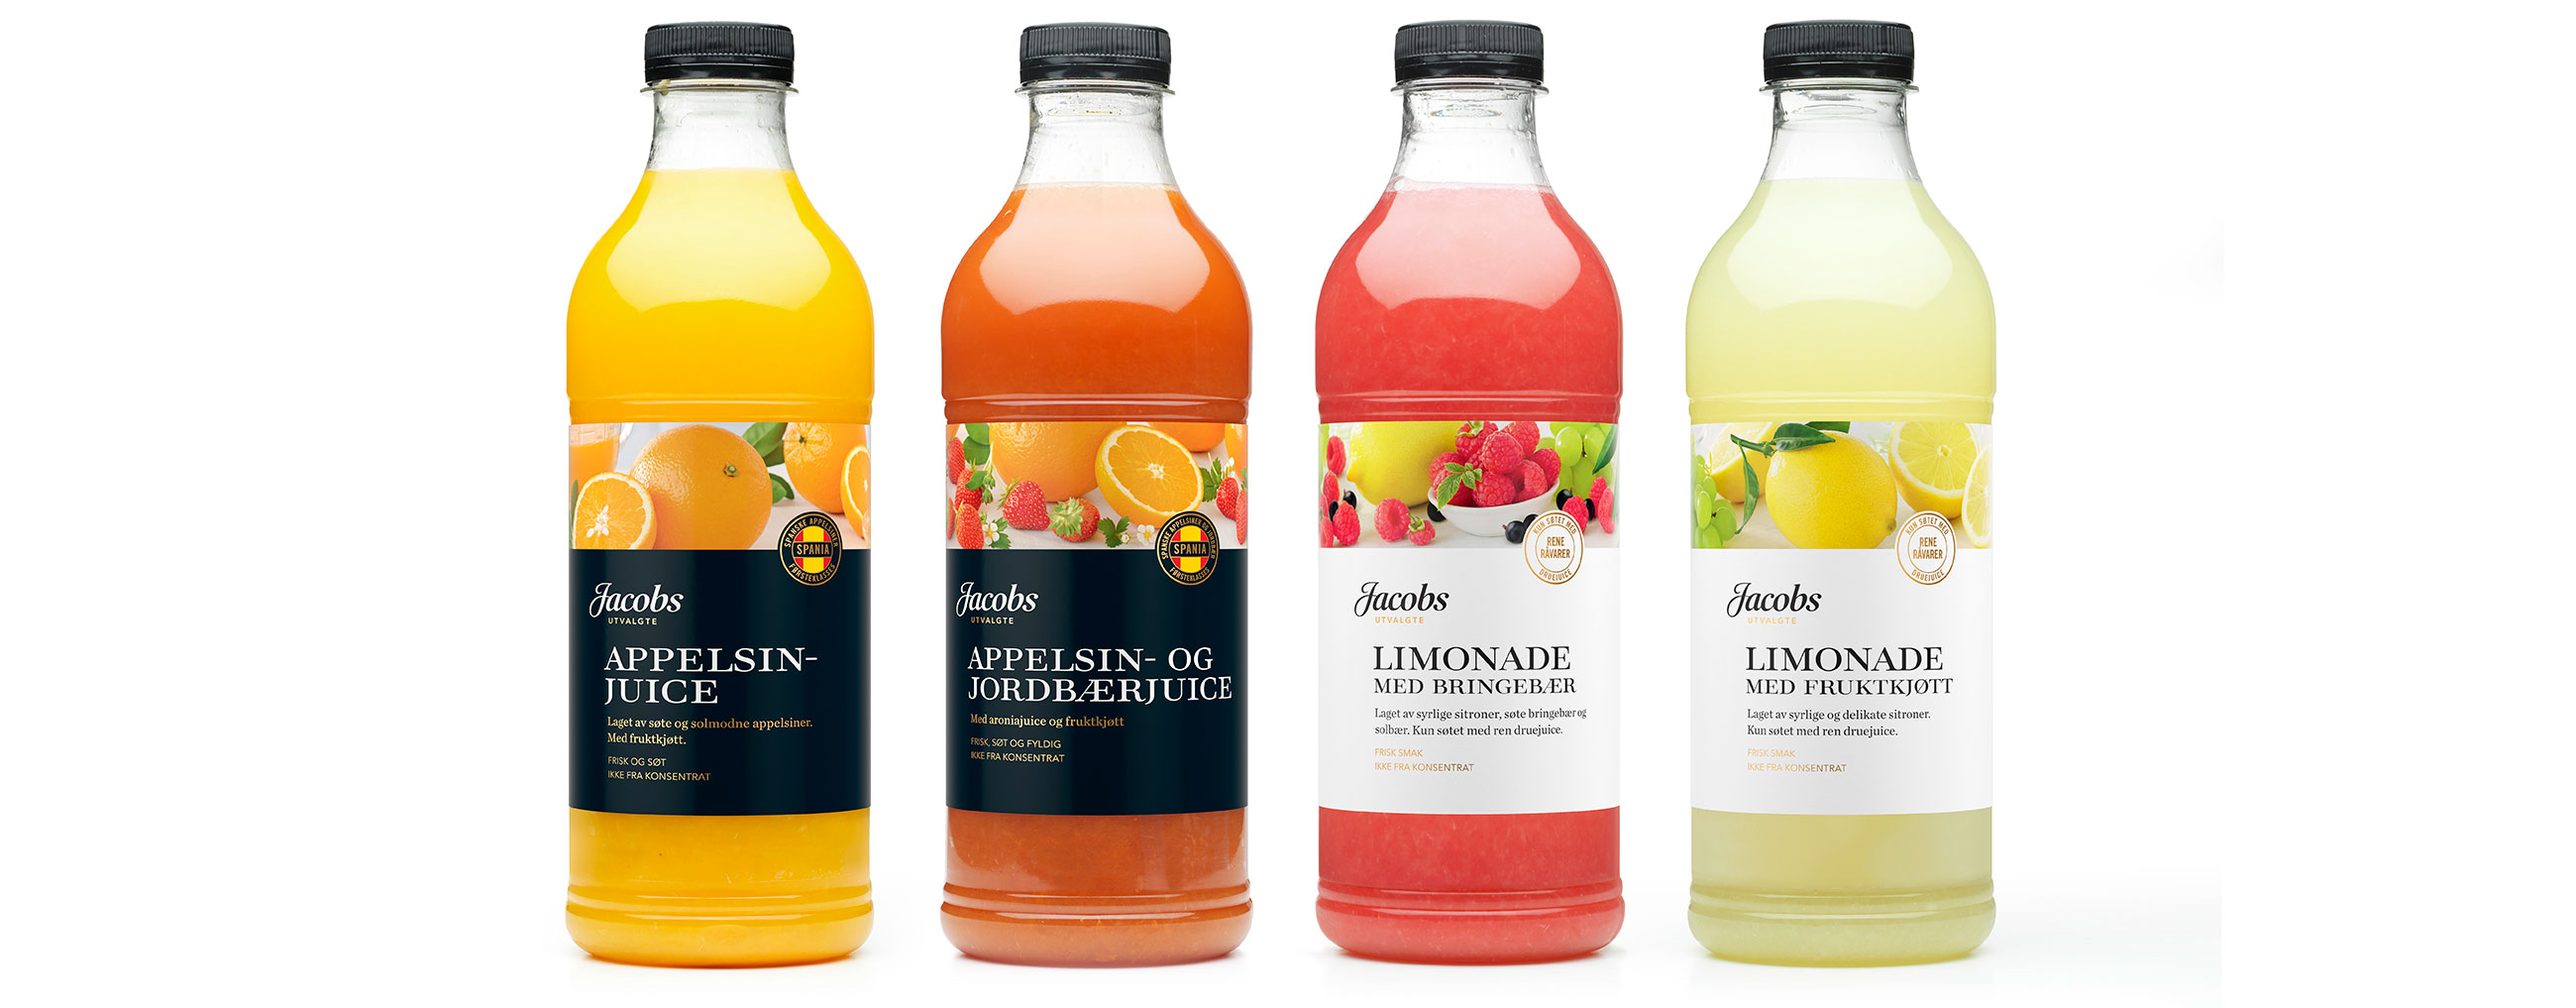 Jacobs Utvalgte appelsinjuice, Appelsin- og Jordbærjuice og Limonade. Emballasje packaging design.